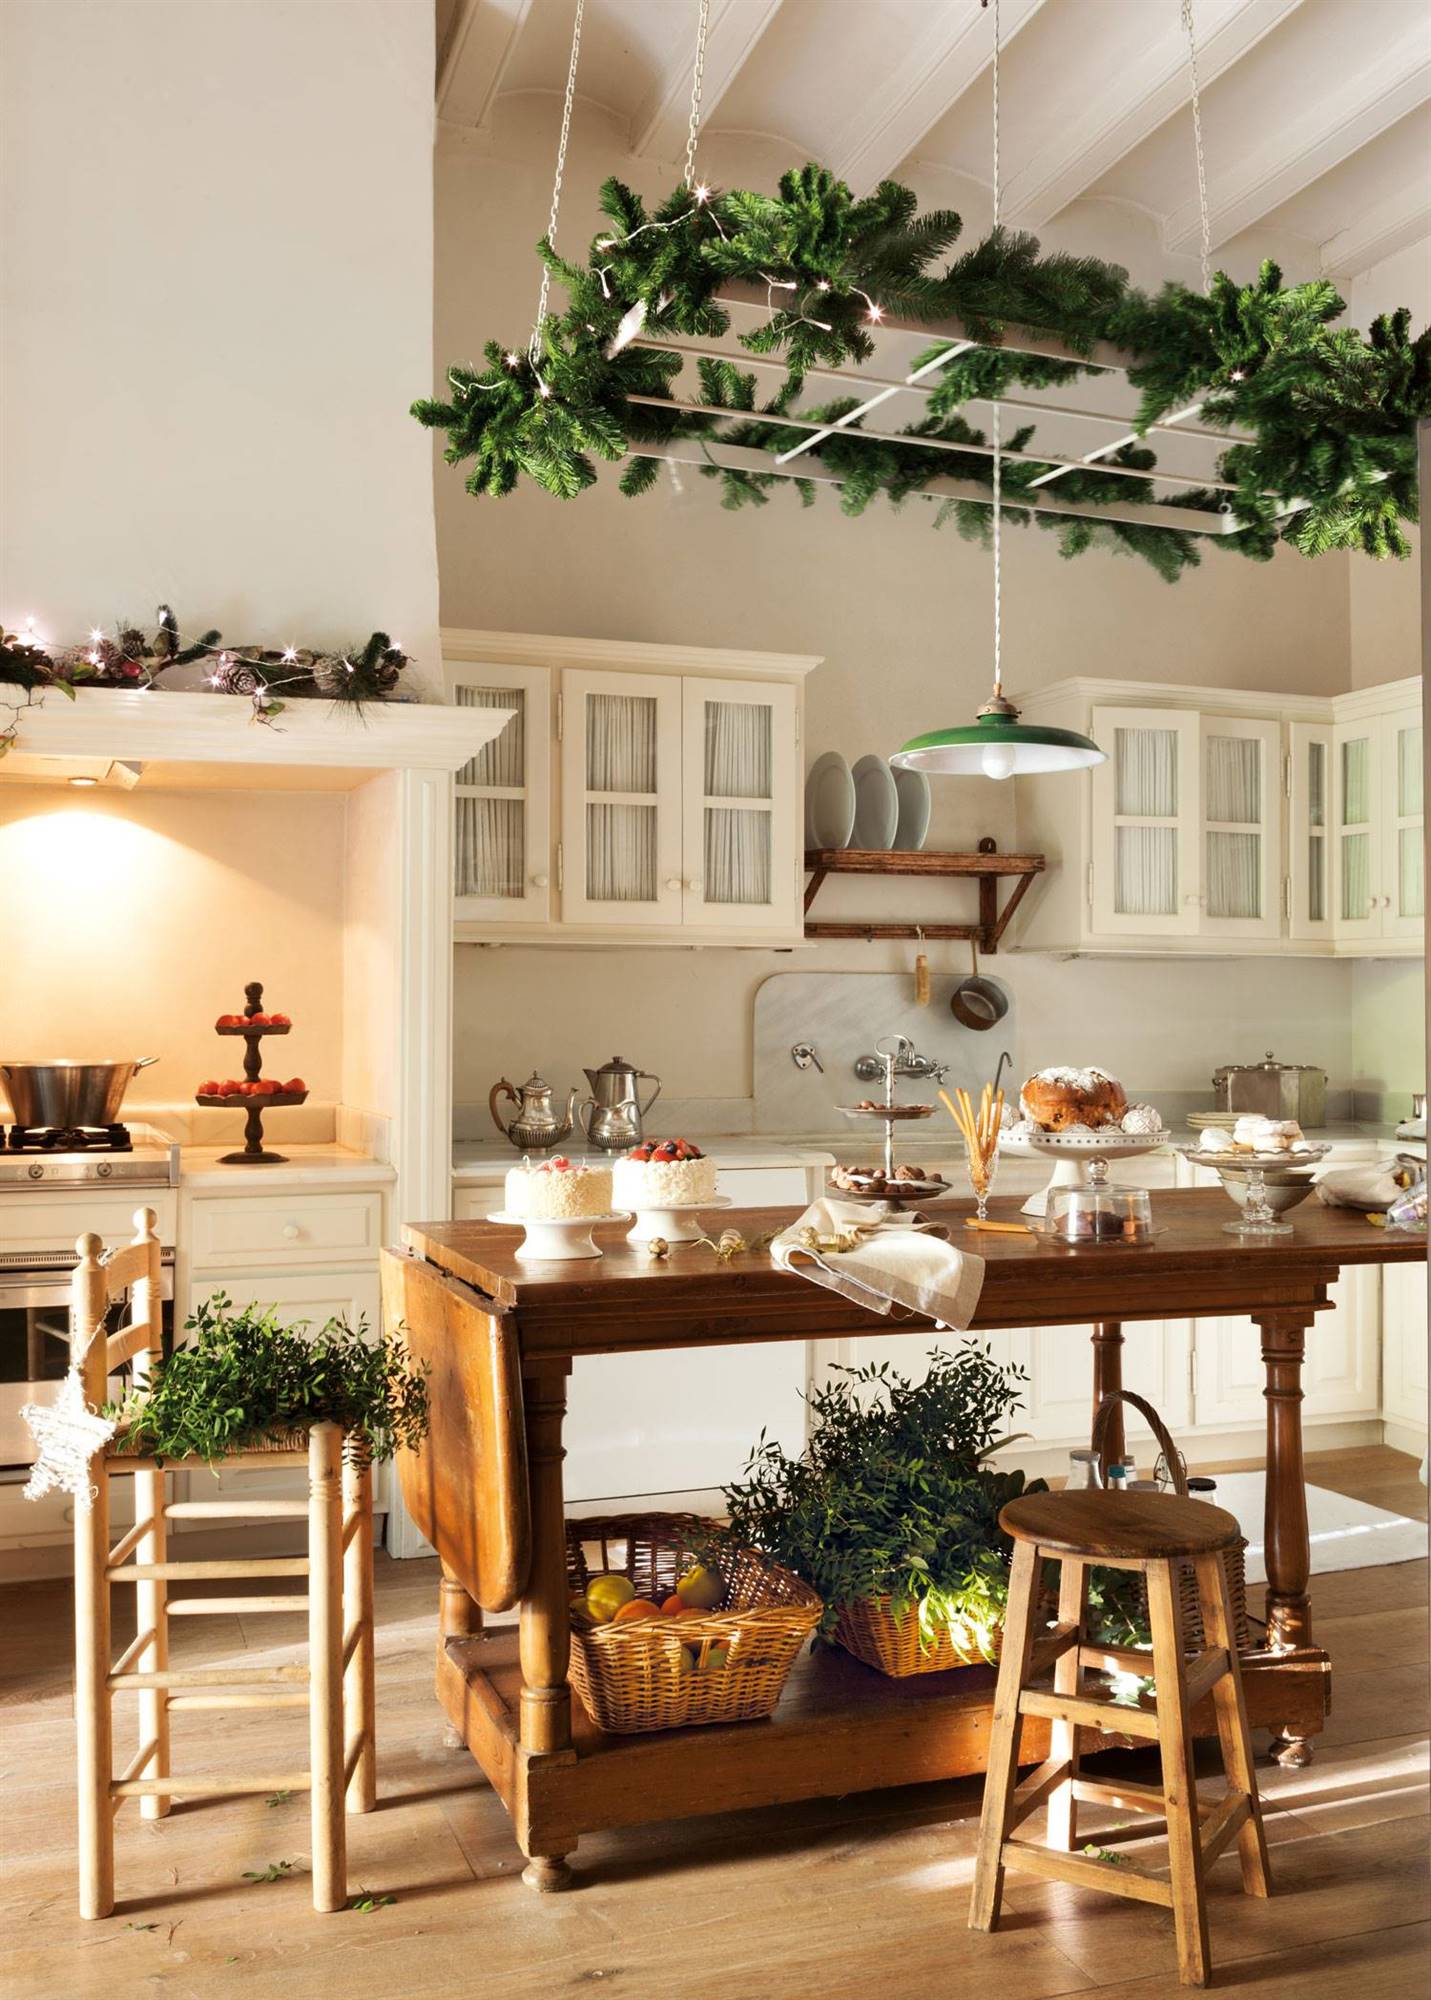 Cocina rústica con mesa tipo isla de madera decorada de Navidad